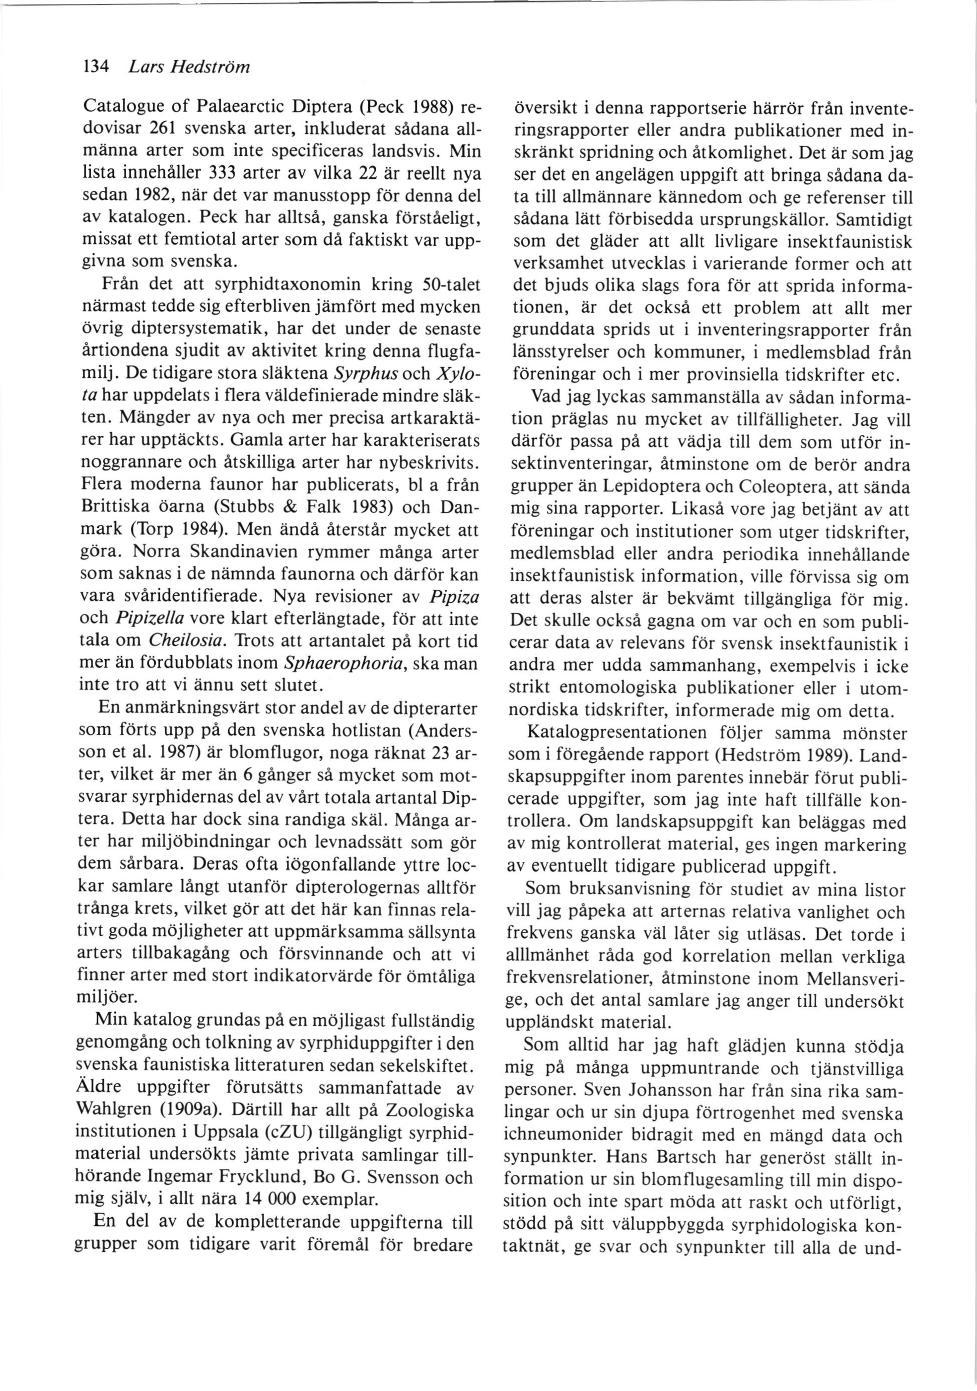 134 Lars Hedström Catalogue of Palaearctic Diptera (Peck 1988) redovisar 261 svenska arter, inkluderat sådana allmänna arter som inte specificeras landsvis.